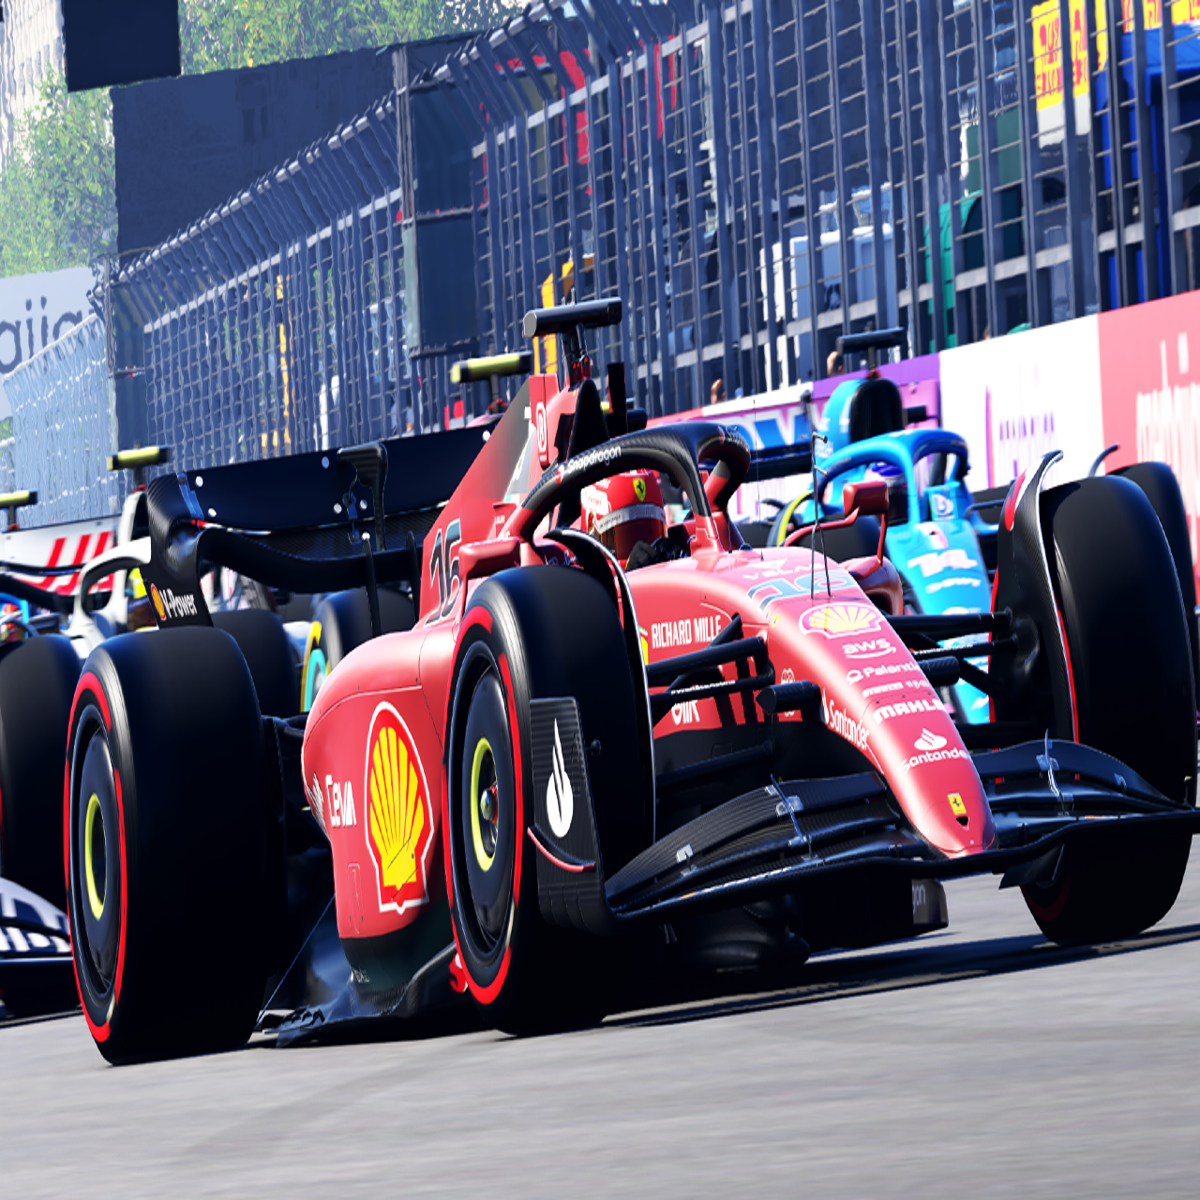 Aceleramos o Forza Motorsport 6, game mais realista e divertido da série